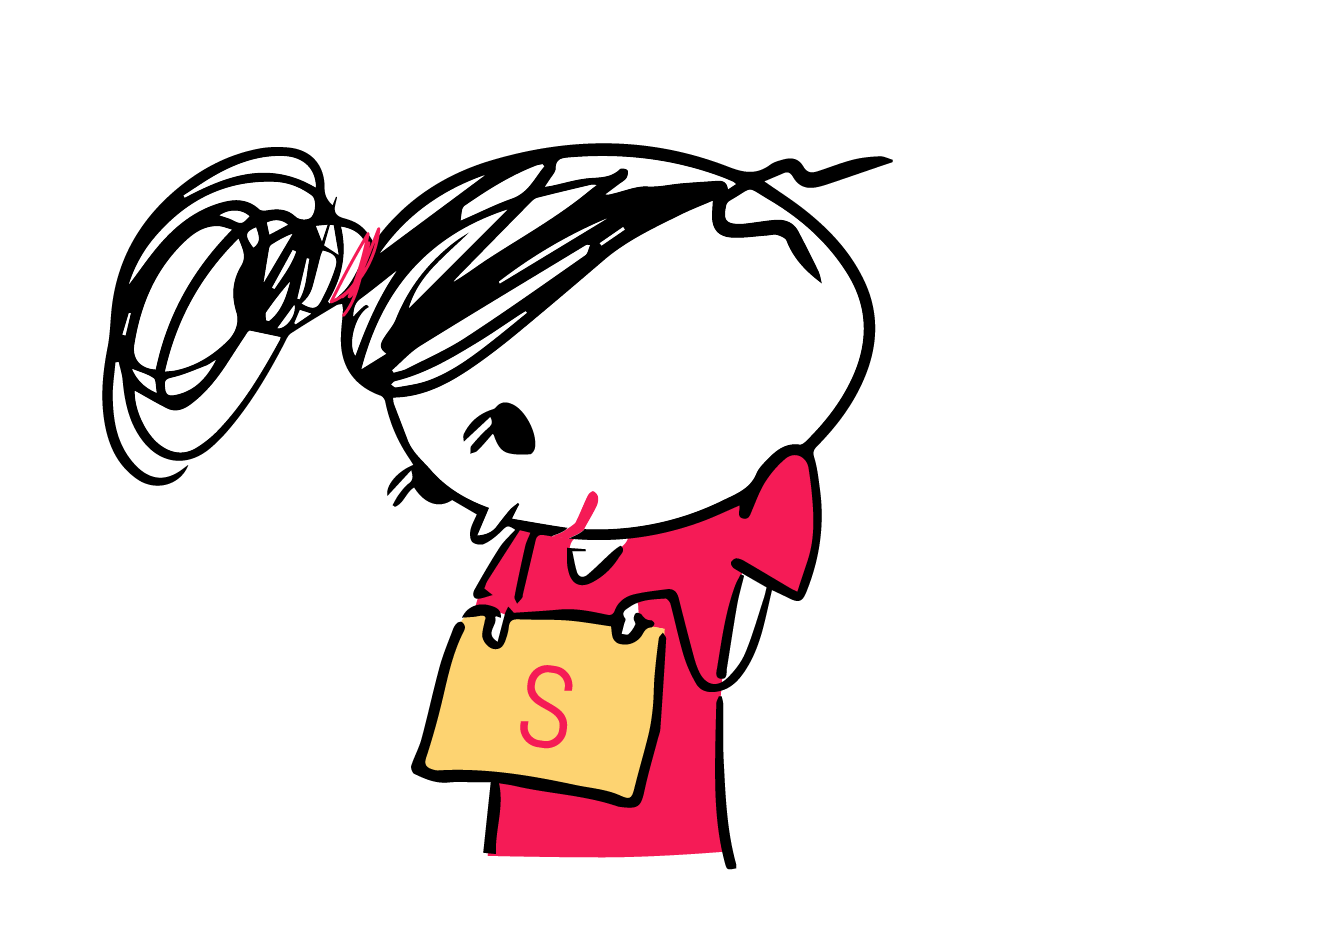 Ein Strichmännel-Mädchen schaut auf einen kleinen Zettel, den es vor sich hält und auf dem der Buchstabe S abgebildet ist.